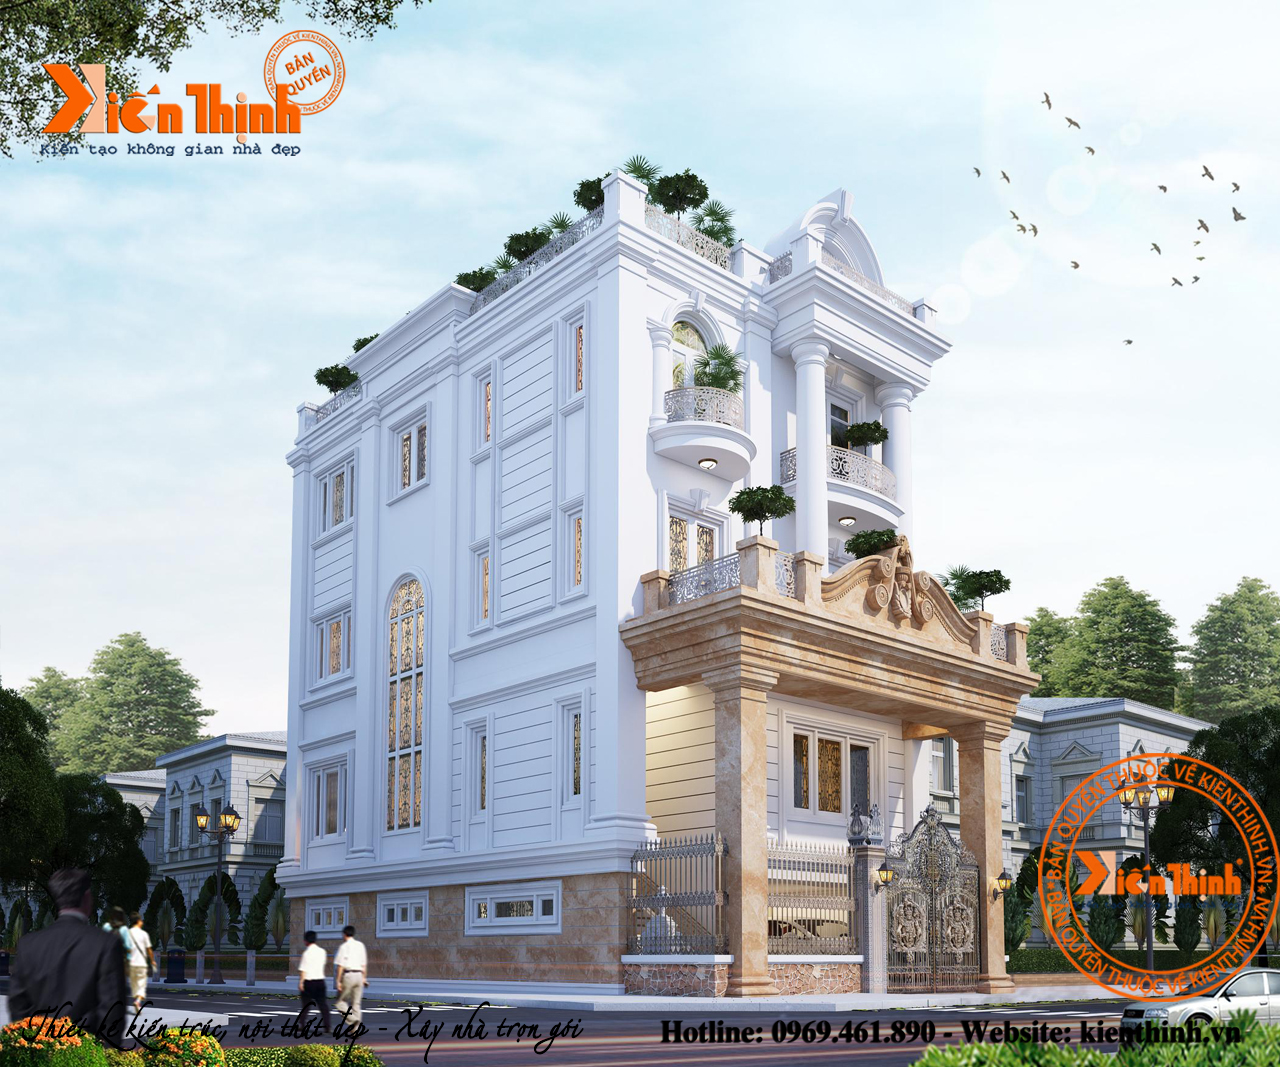 THình ảnh thiết kế biệt thự đẹp 5 tầng cao cấp mang đậm phong cách tân cổ điển Ở Hà Nội